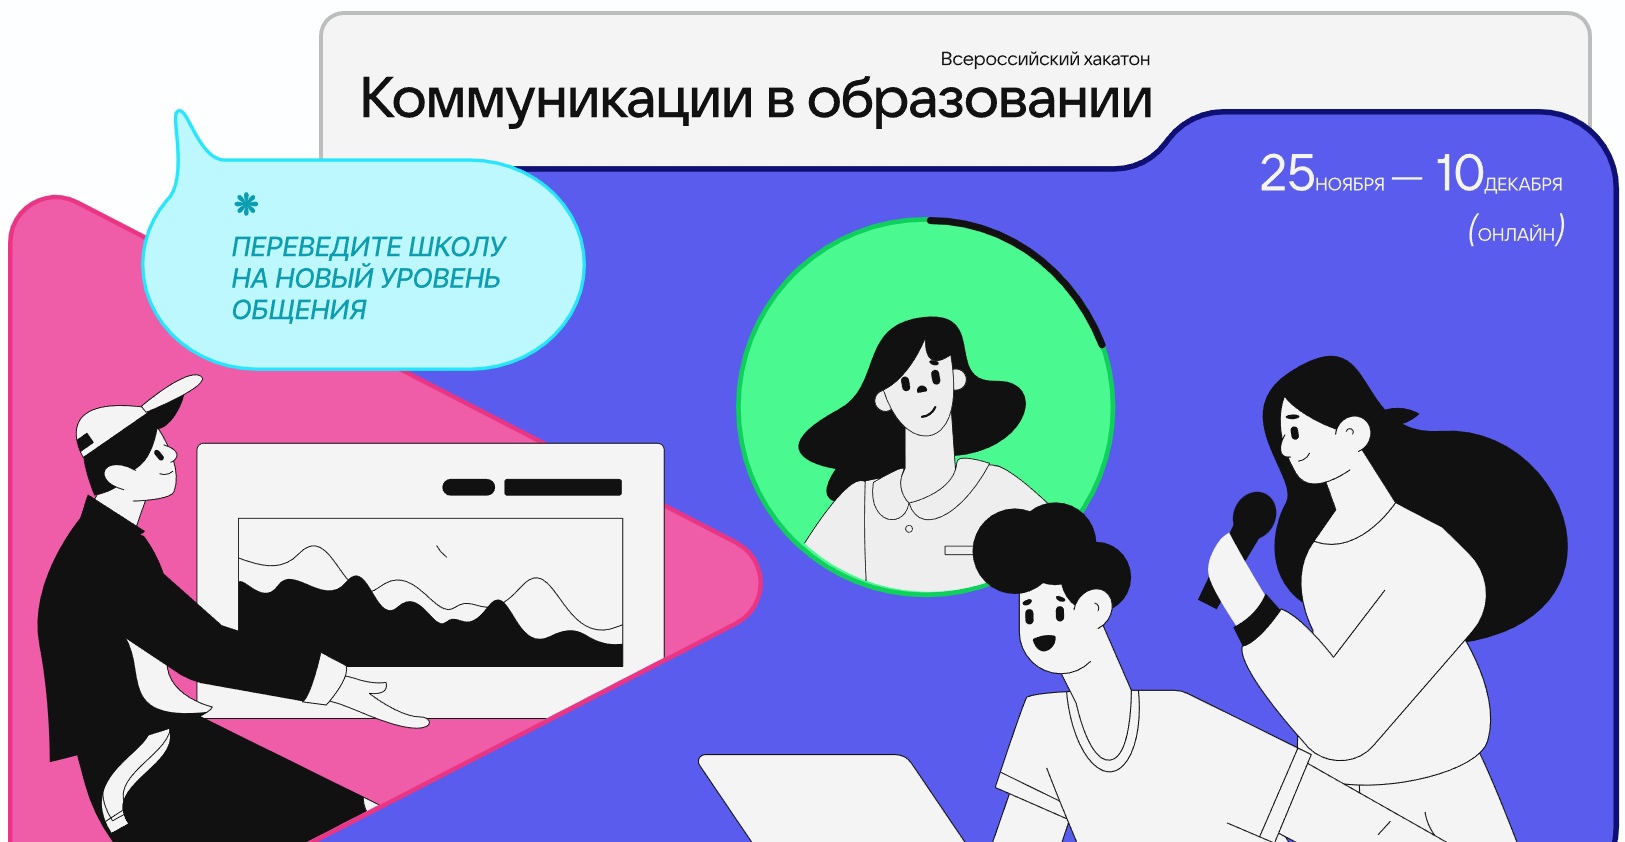 Информационно-коммуникационная образовательная платформа Сферум запускает Всероссийский форум «Коммуникации в образовании»